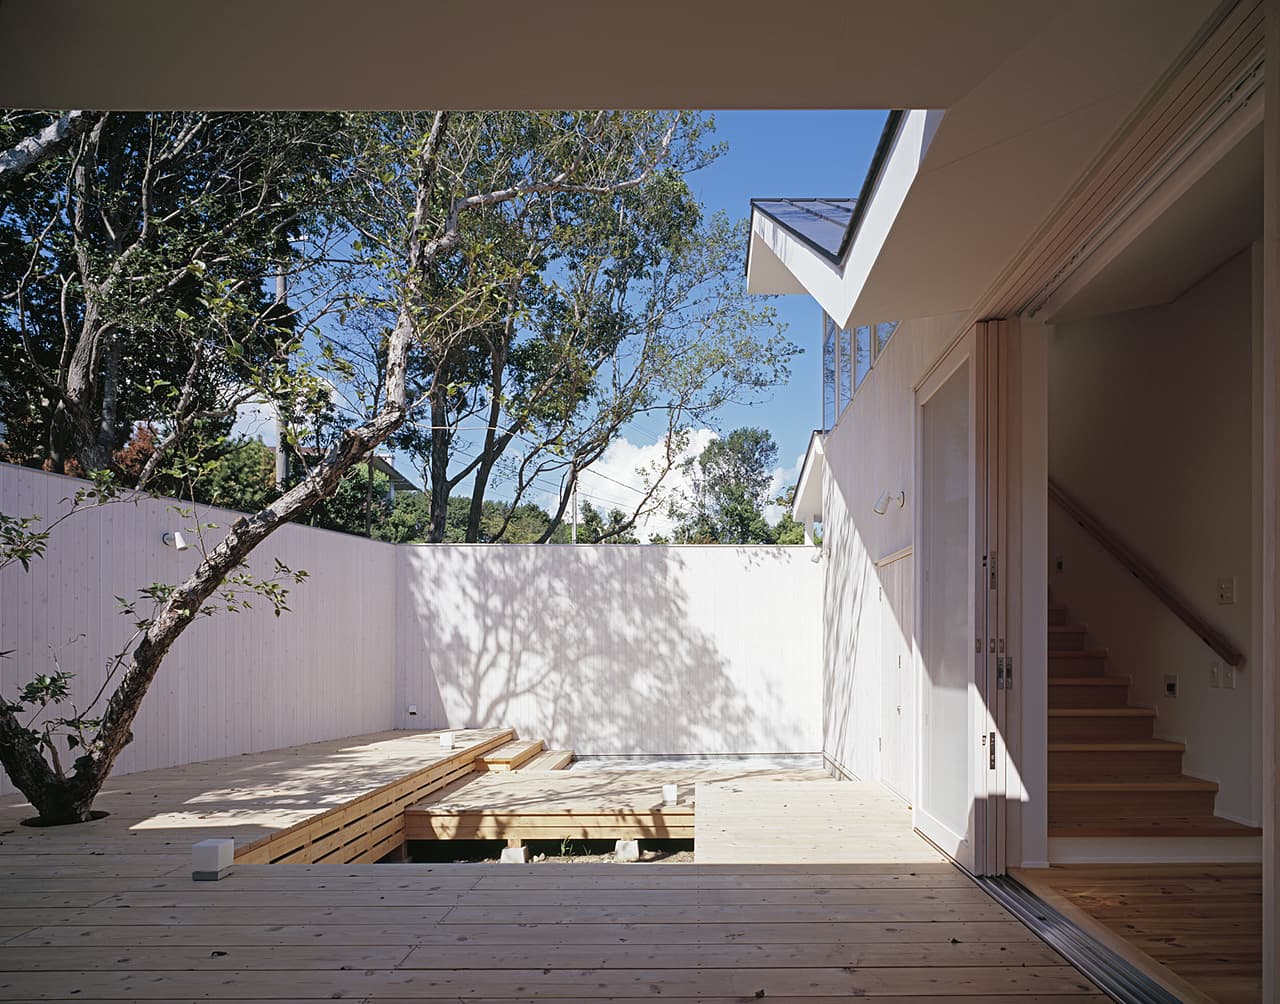 大阪の建築家・中平勝が設計したセカンドハウス・別荘の中庭です